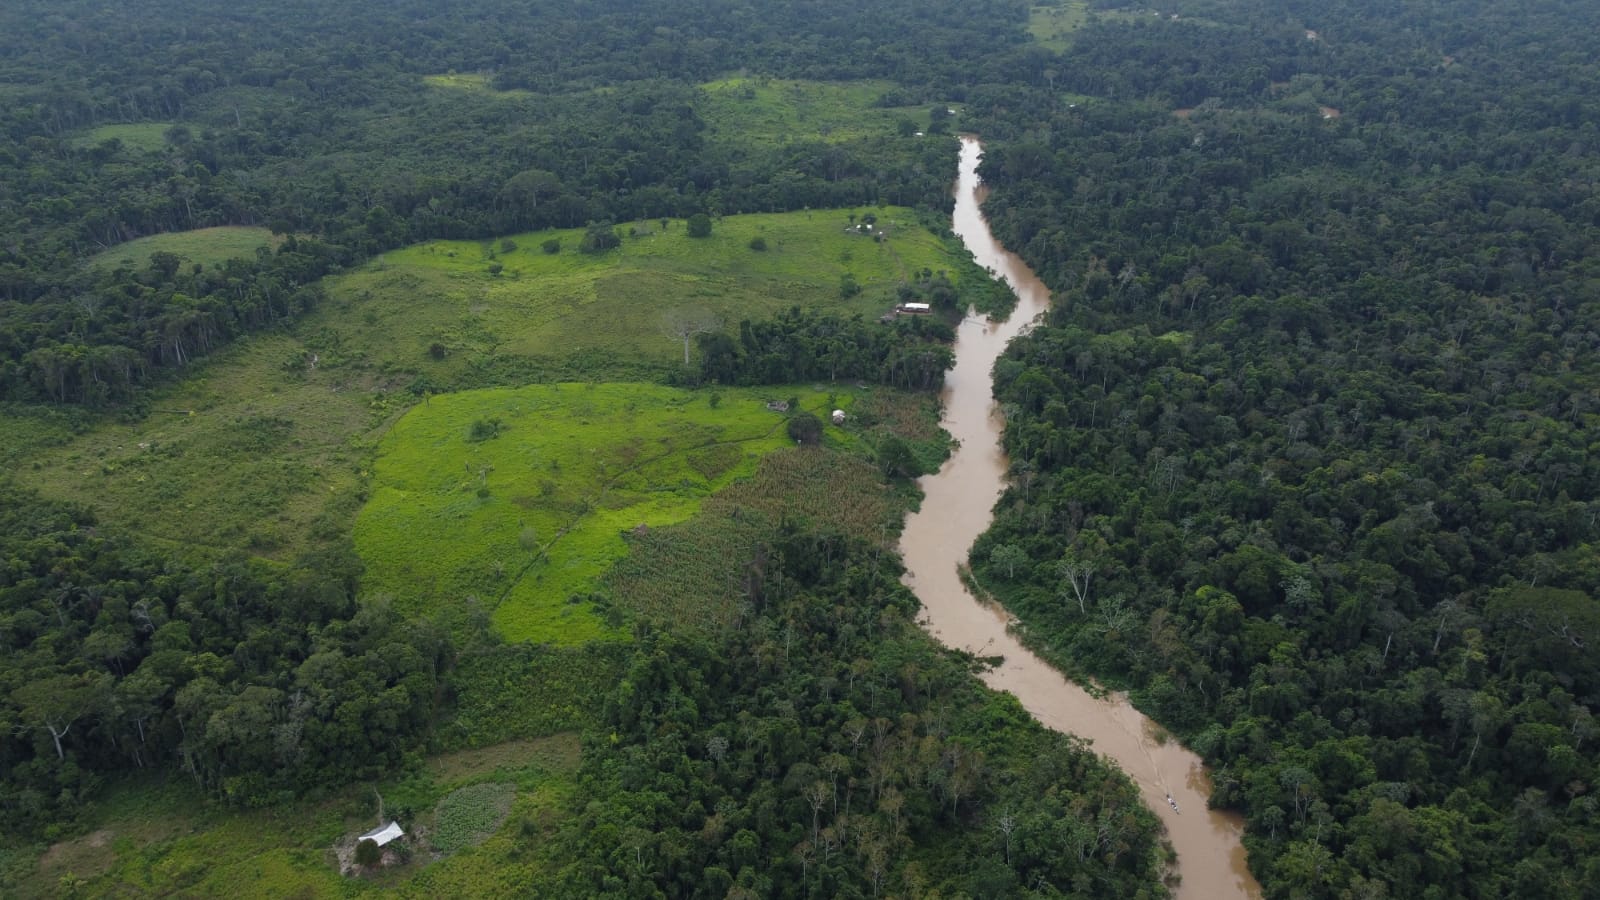 Imagen aérea de zona con plantaciones y ganadería y, del otro lado de un río, zona boscosa